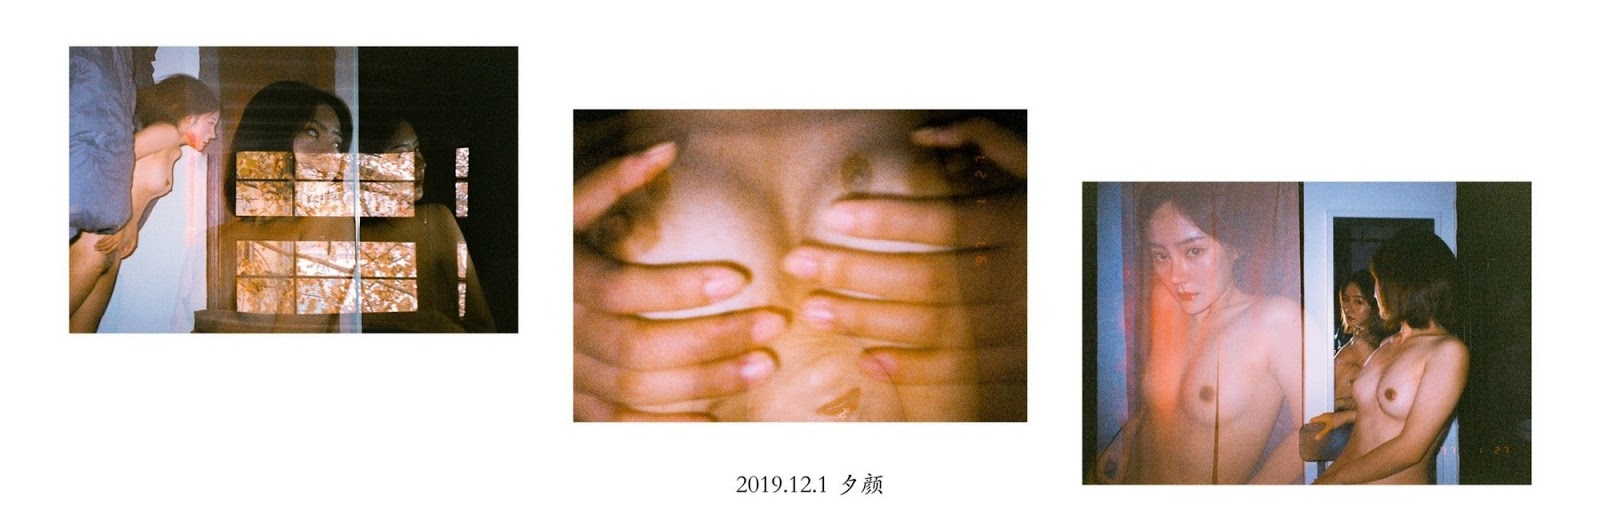 [攝影師BelleAlice] 作品模特夕顔 Model Xii-Yan Vol.01